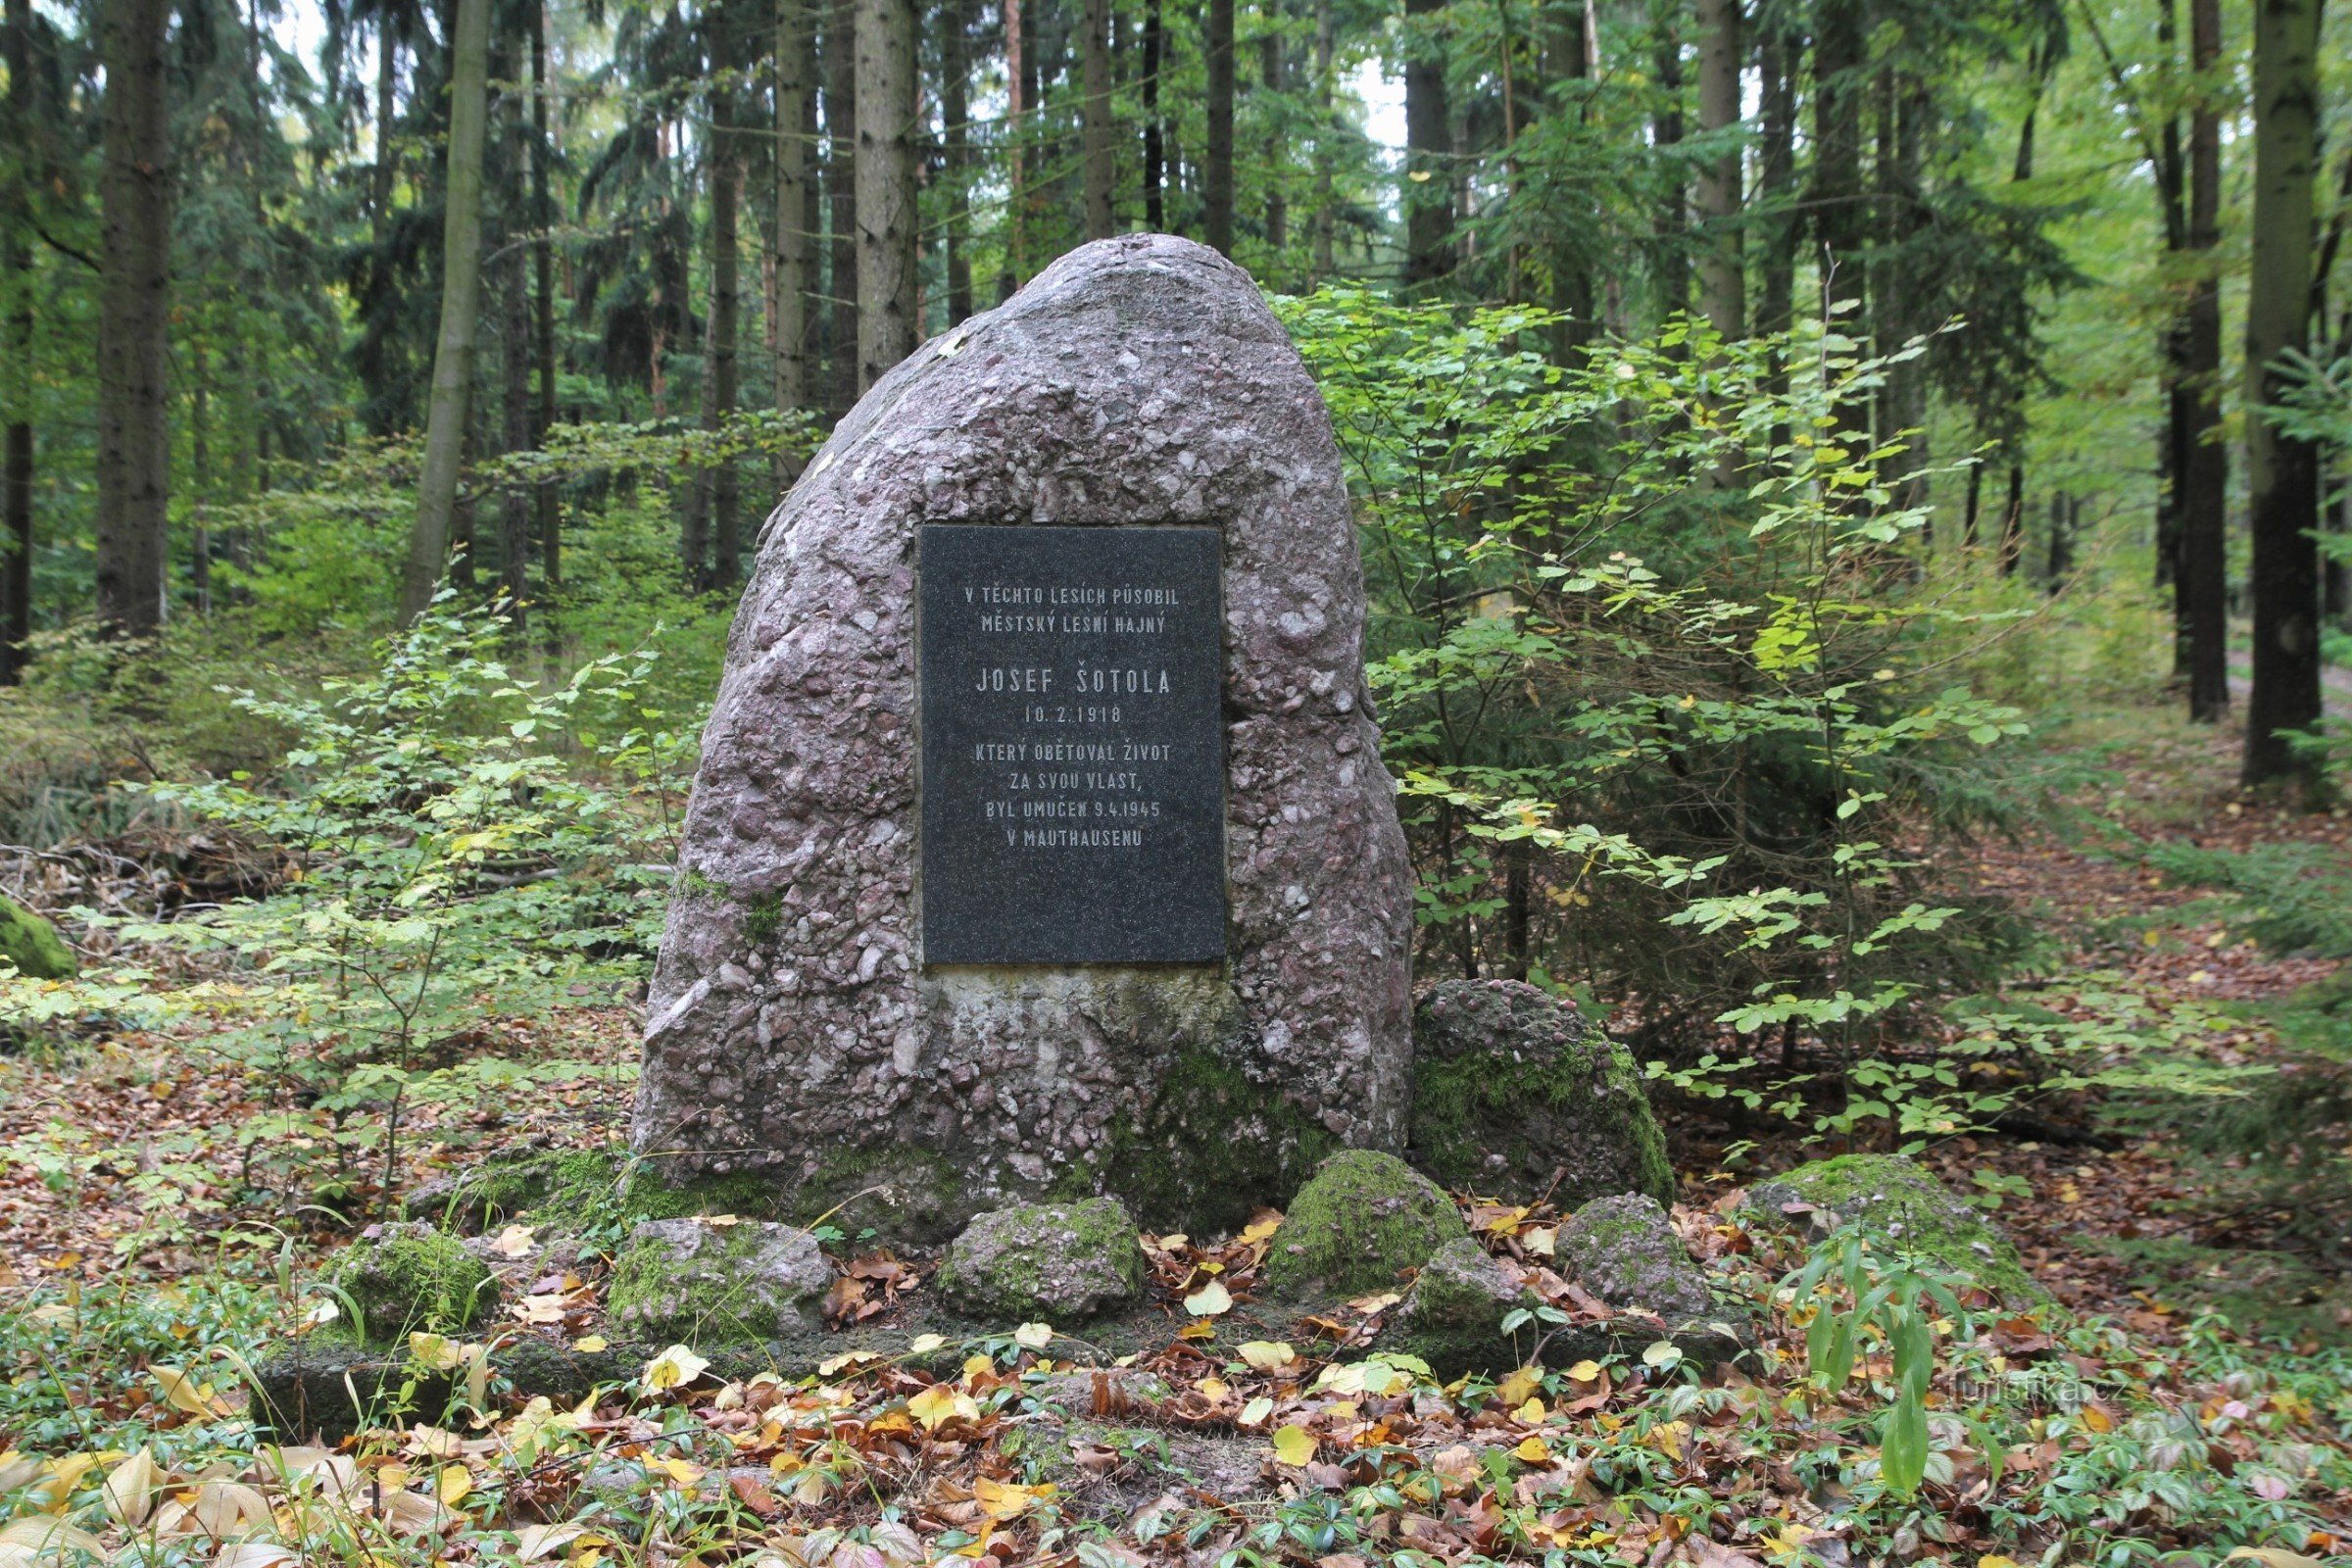 Monumentul lui Josef Šotola